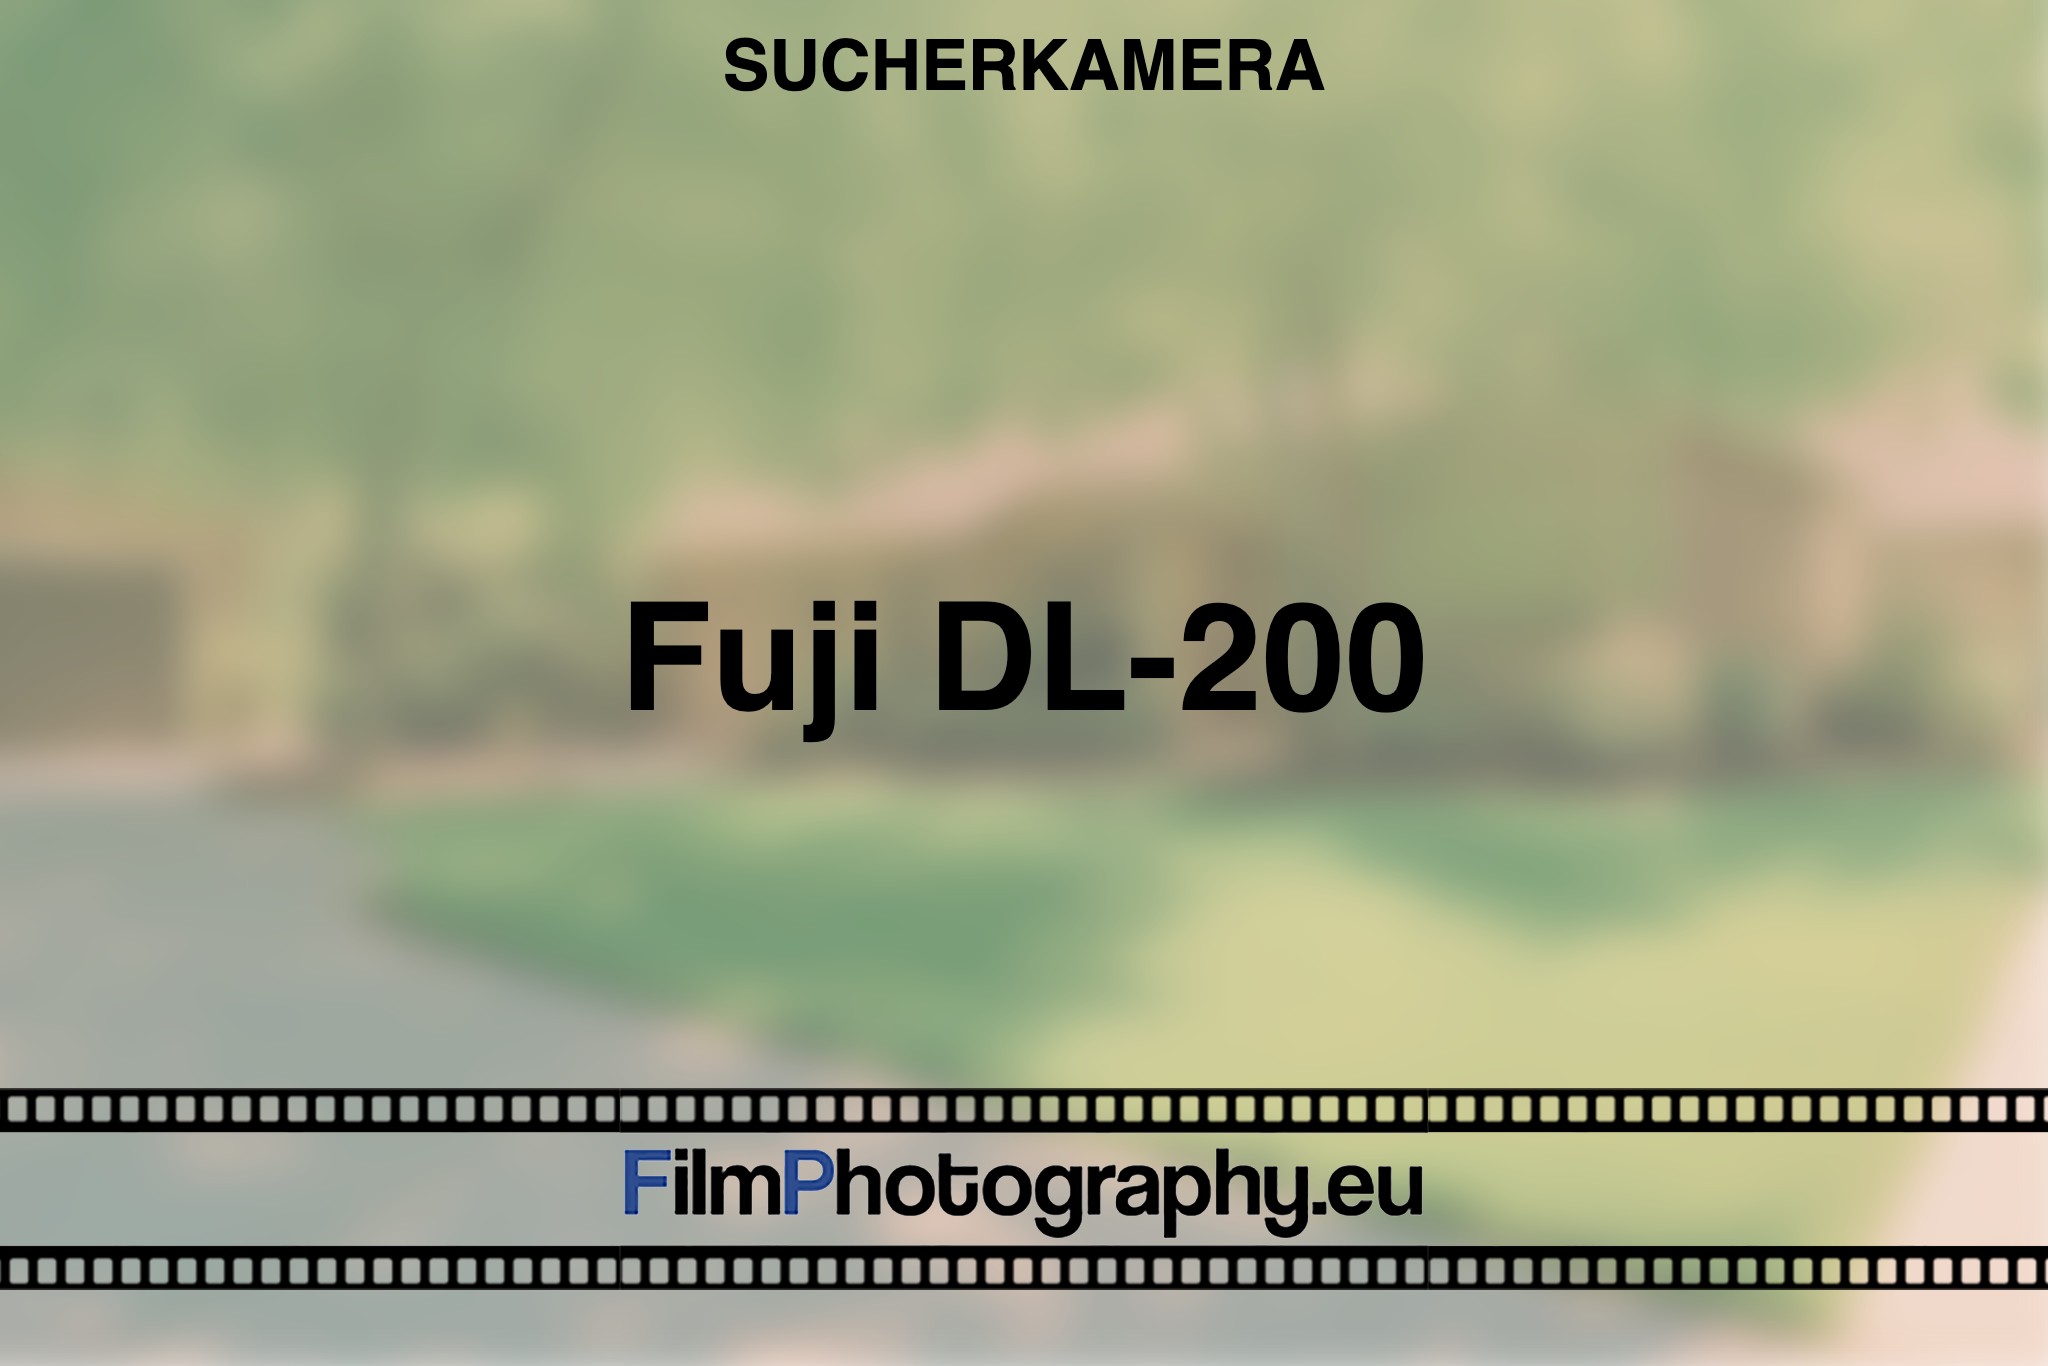 fuji-dl-200-sucherkamera-bnv